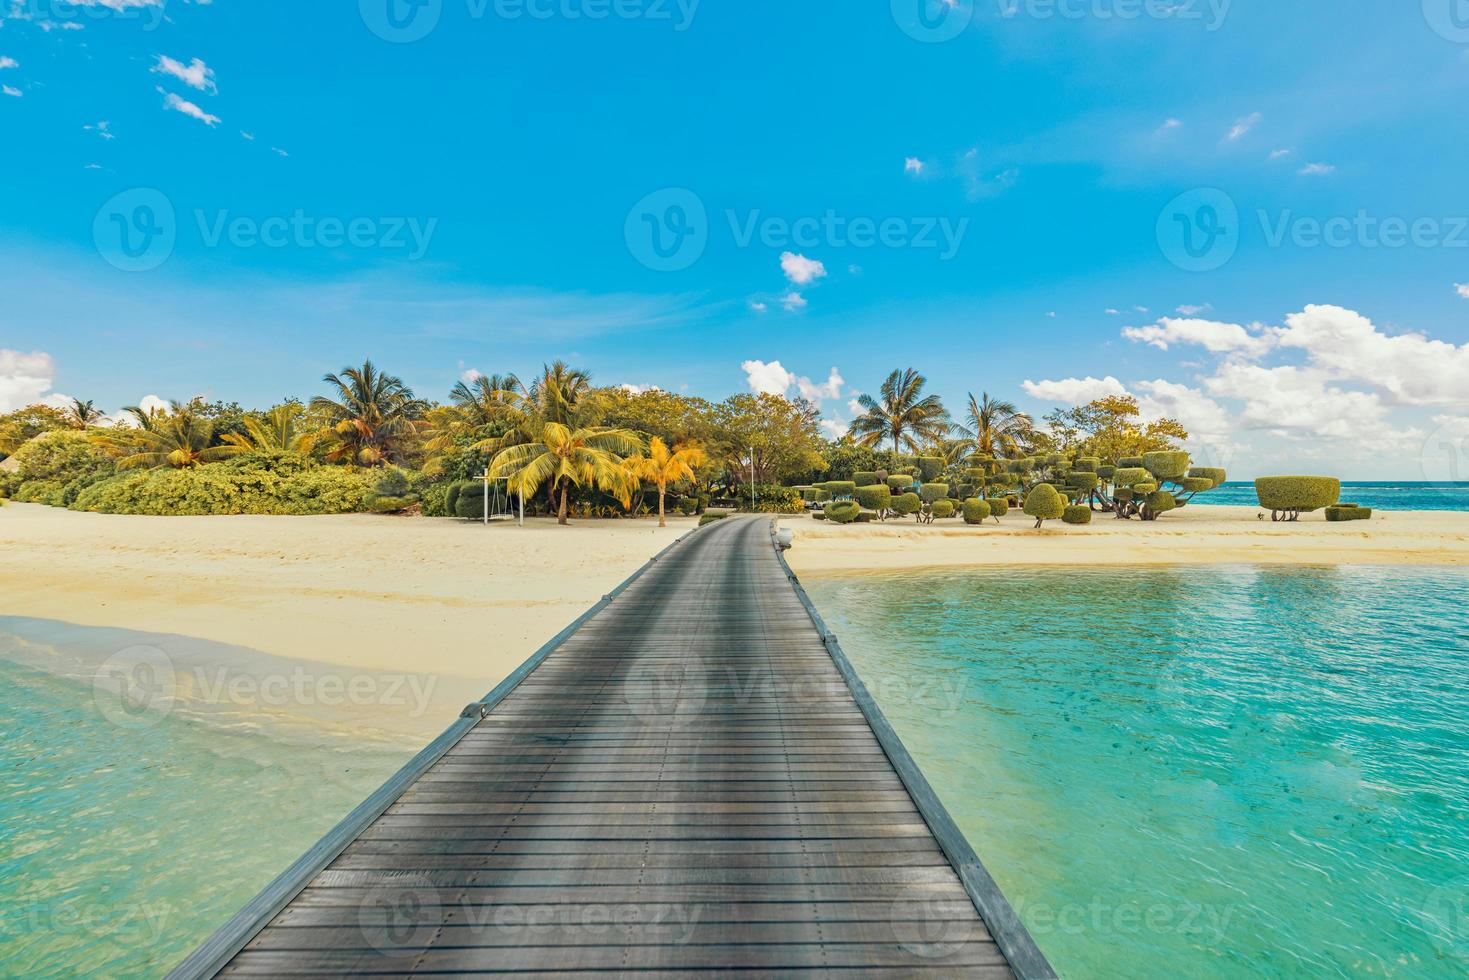 verbazingwekkend panorama Bij Maldiven. luxe toevlucht villa's pier zeegezicht met palm bomen, wit zand en blauw lucht. mooi zomer landschap. tropisch strand achtergrond voor vakantie vakantie. paradijs eiland foto